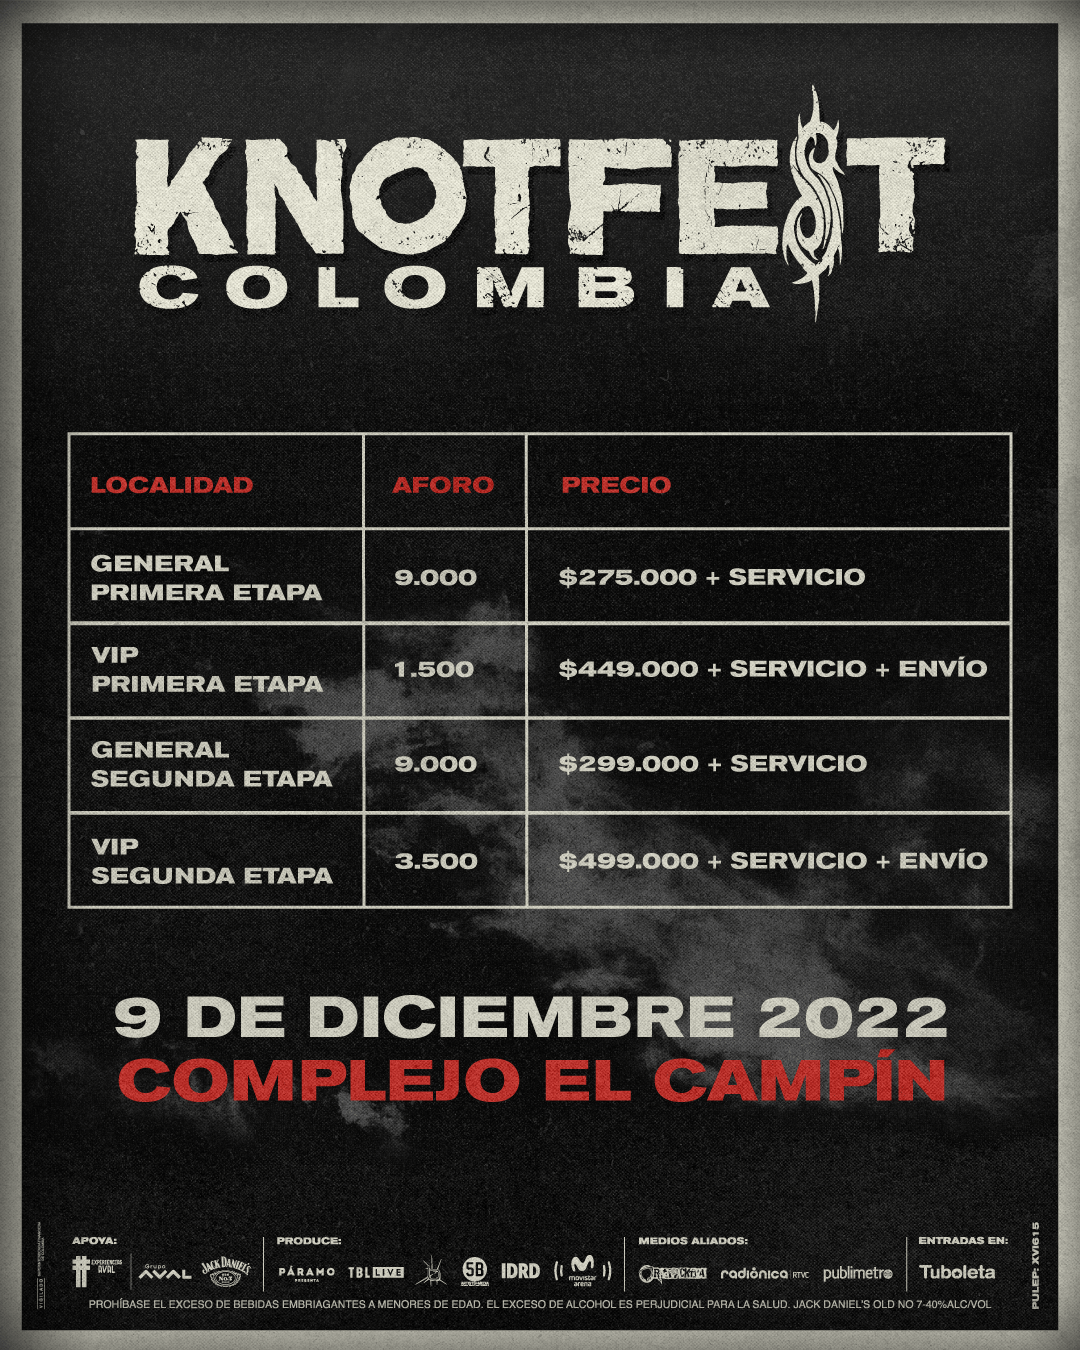 Precios Knot Fest Colombia 2022 - KNOTFEST 2022: Judas Priest, Pantera y Bring Me The Horizon, encabezan el esperado regreso de los sonidos extremos